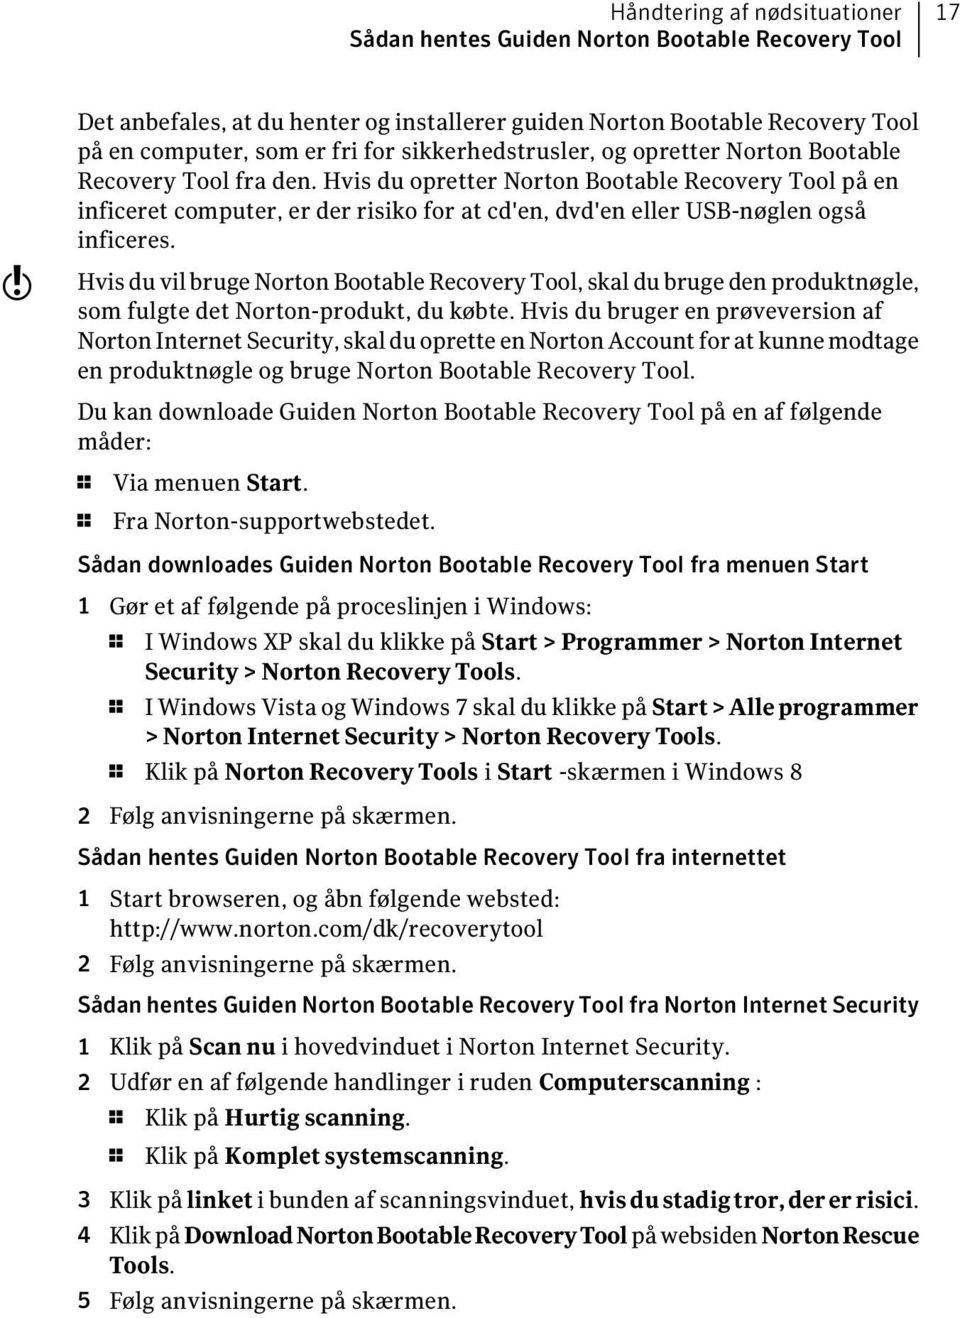 Hvis du opretter Norton Bootable Recovery Tool på en inficeret computer, er der risiko for at cd'en, dvd'en eller USB-nøglen også inficeres.